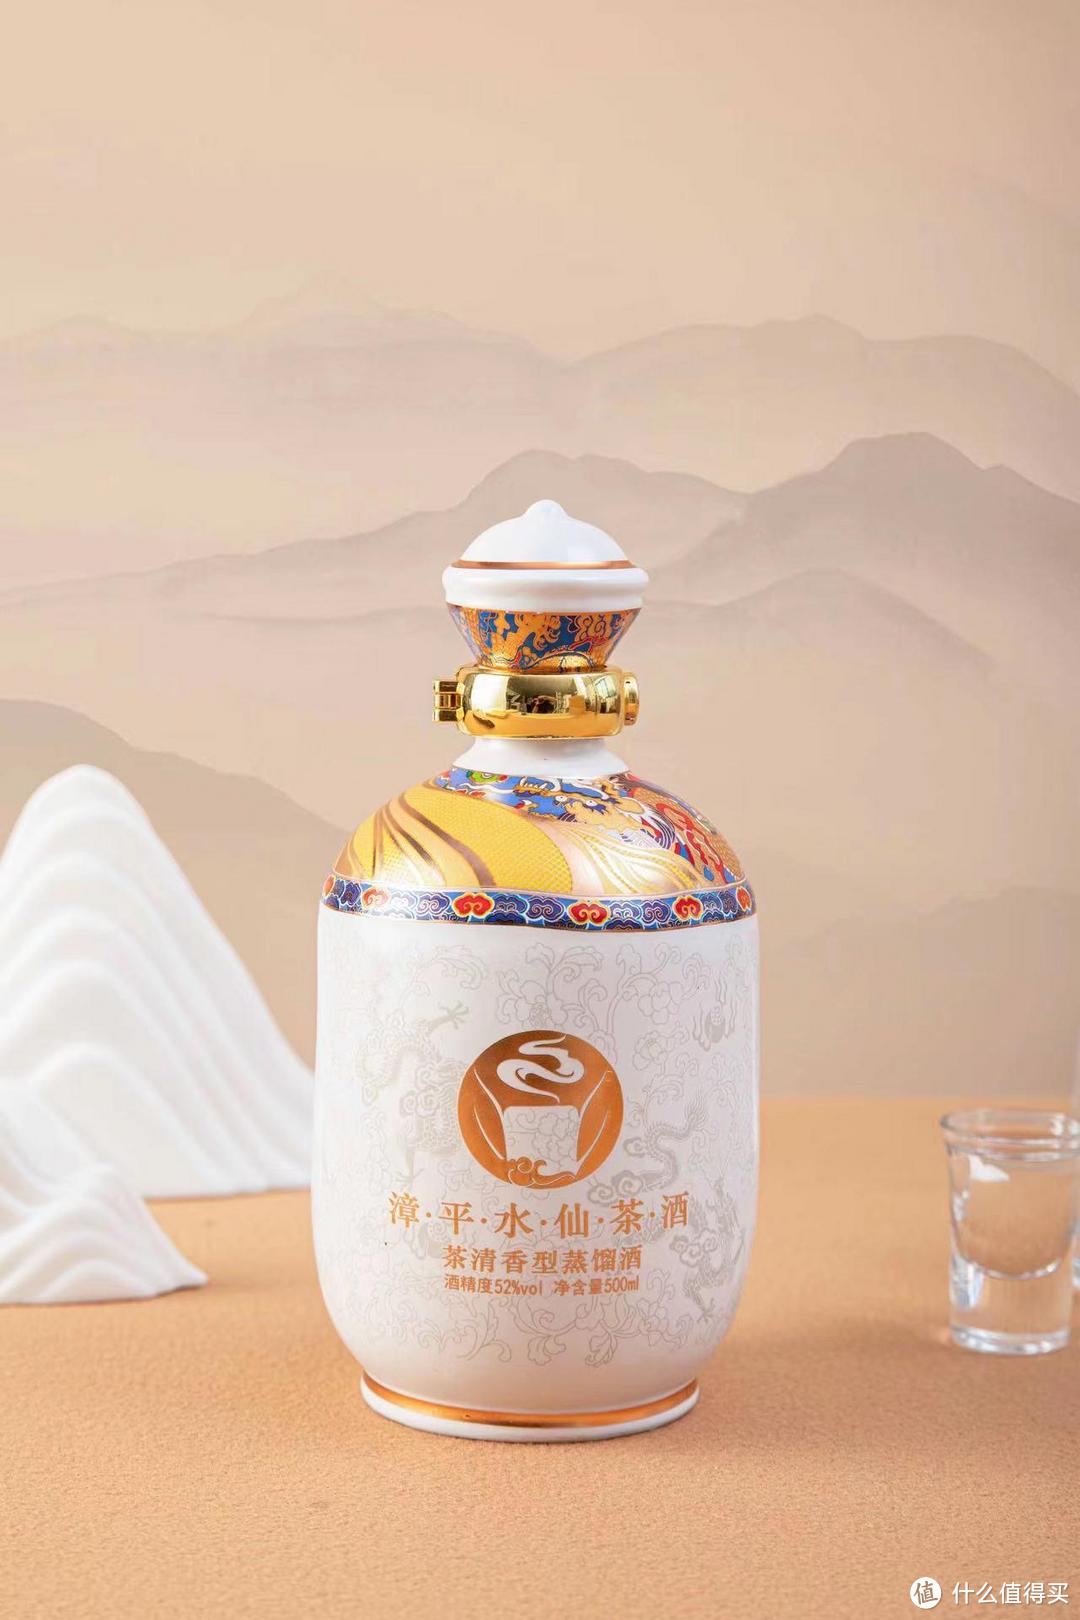 漳平水仙茶酒：穿越千年的茶酒文化传承